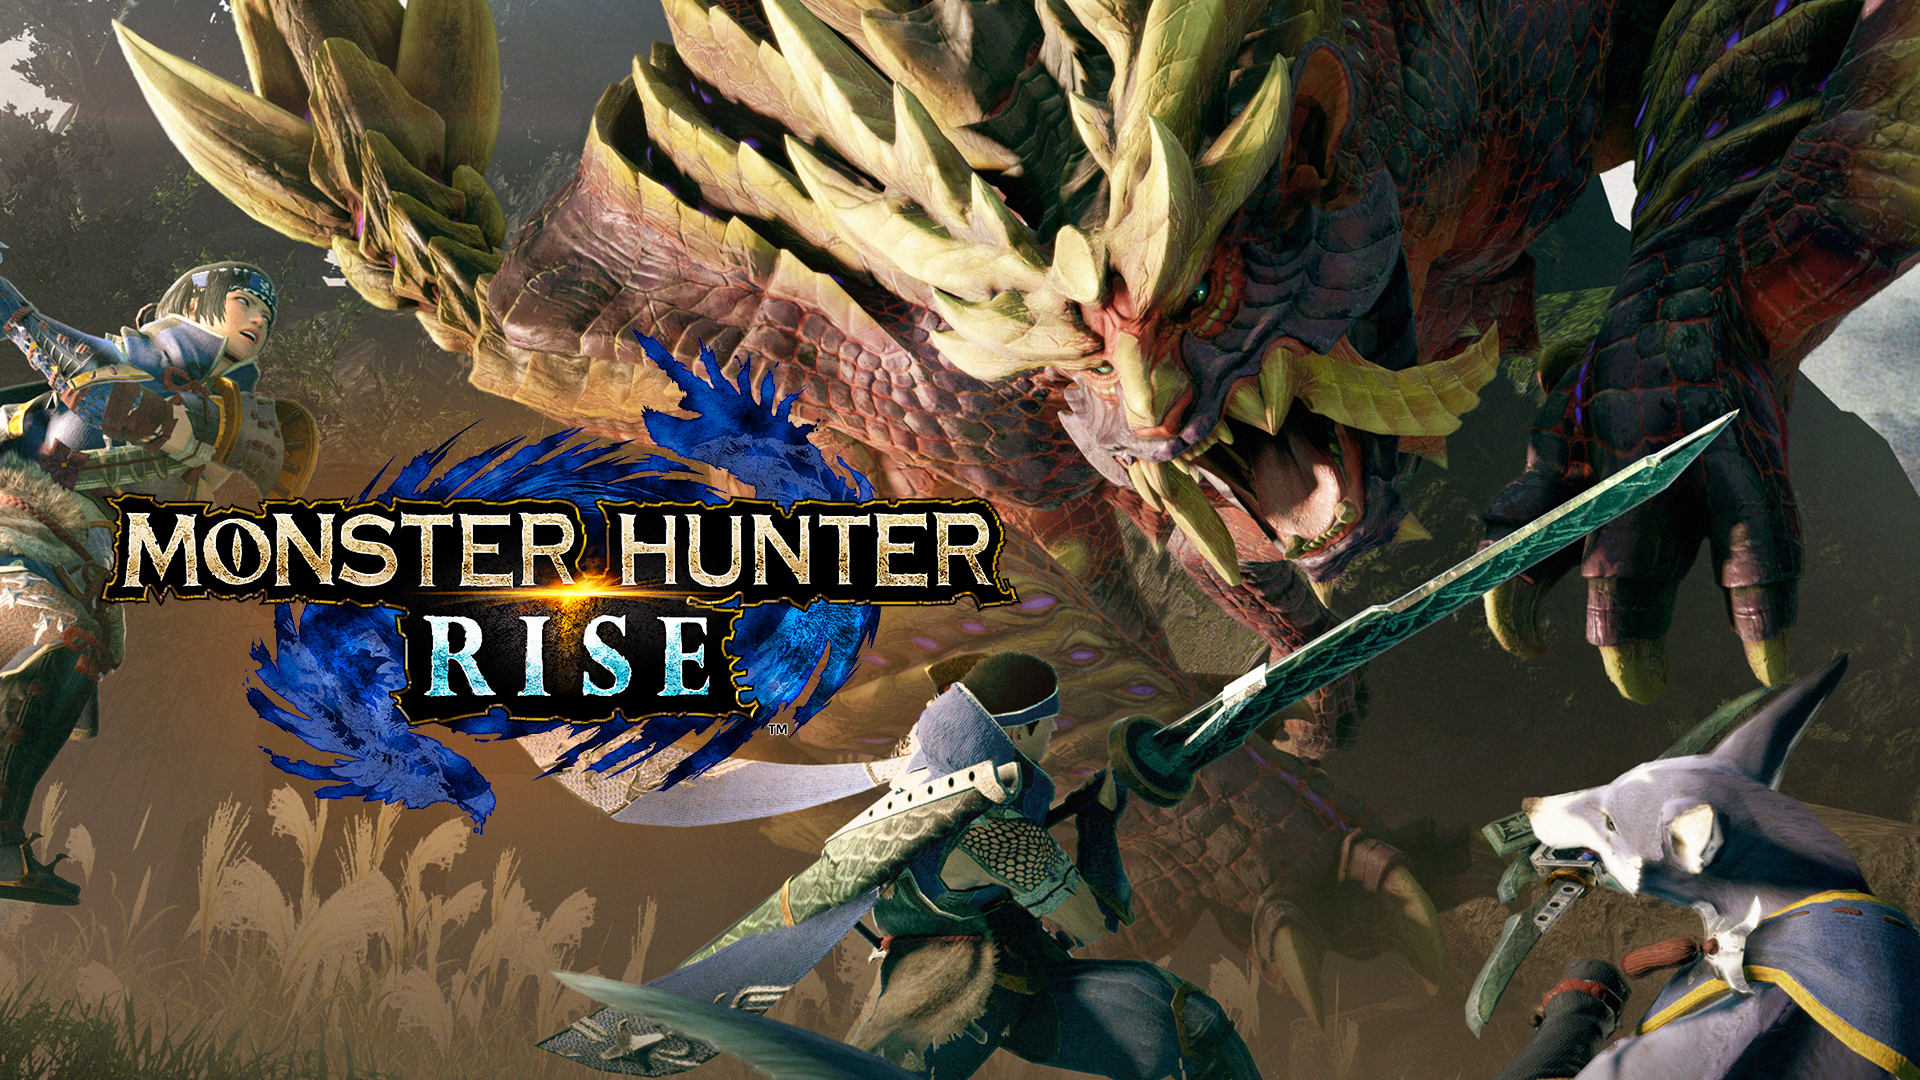 Monster Hunter Rise arriva a sorpresa su Xbox, Xbox Game Pass, e Playstation il 20 gennaio 2023